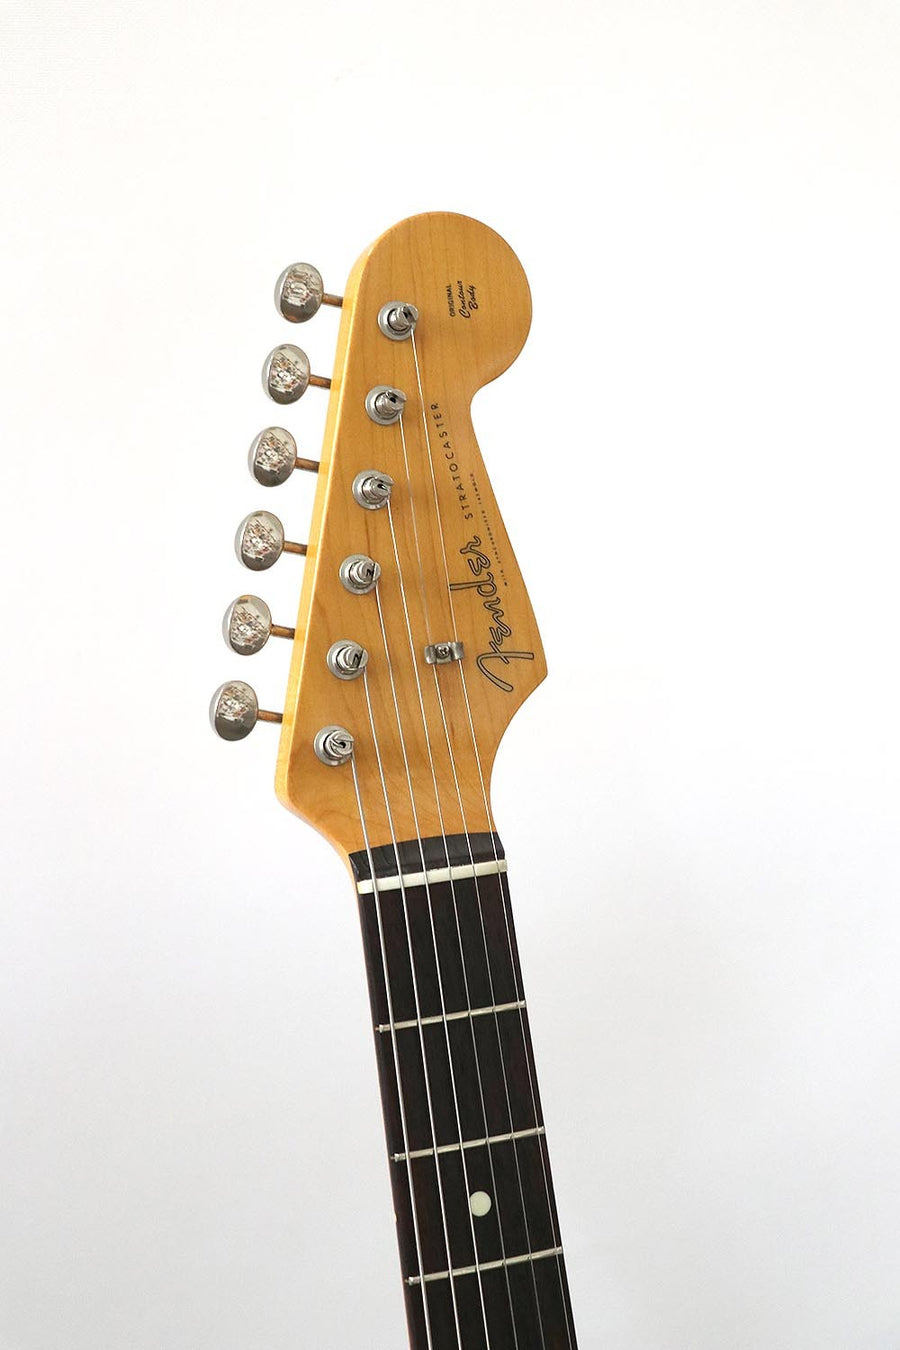 Fender Stratocaster 1962 Reissue CIJ 1997